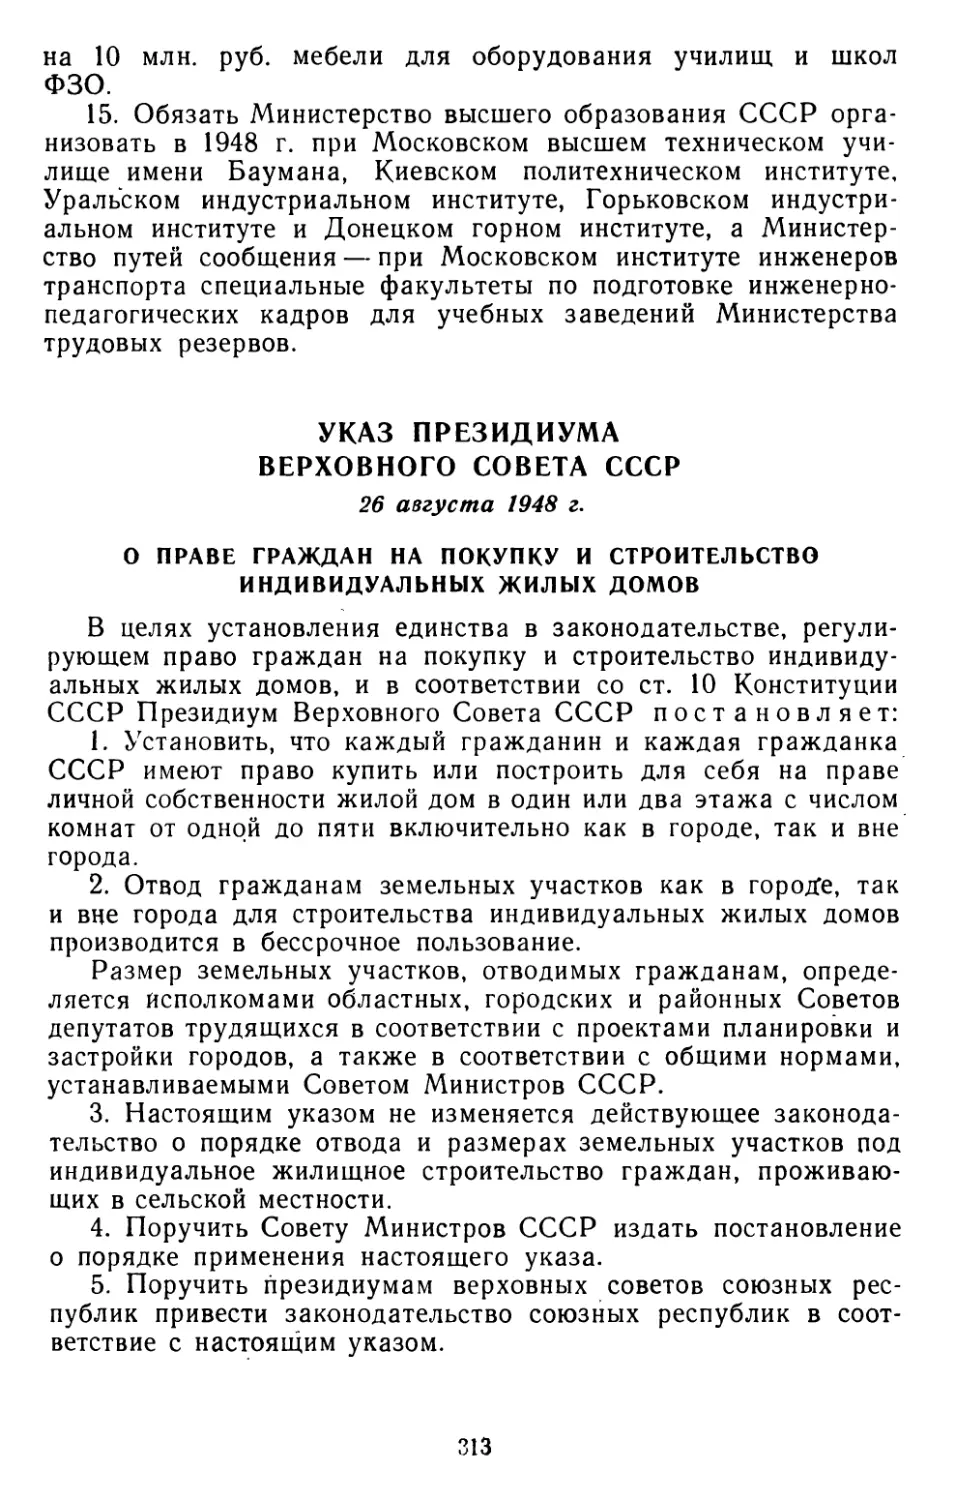 Указ Президиума Верховного Совета СССР, 26 августа 1948 г. О праве граждан на покупку и строительство индивидуальных жилых домов